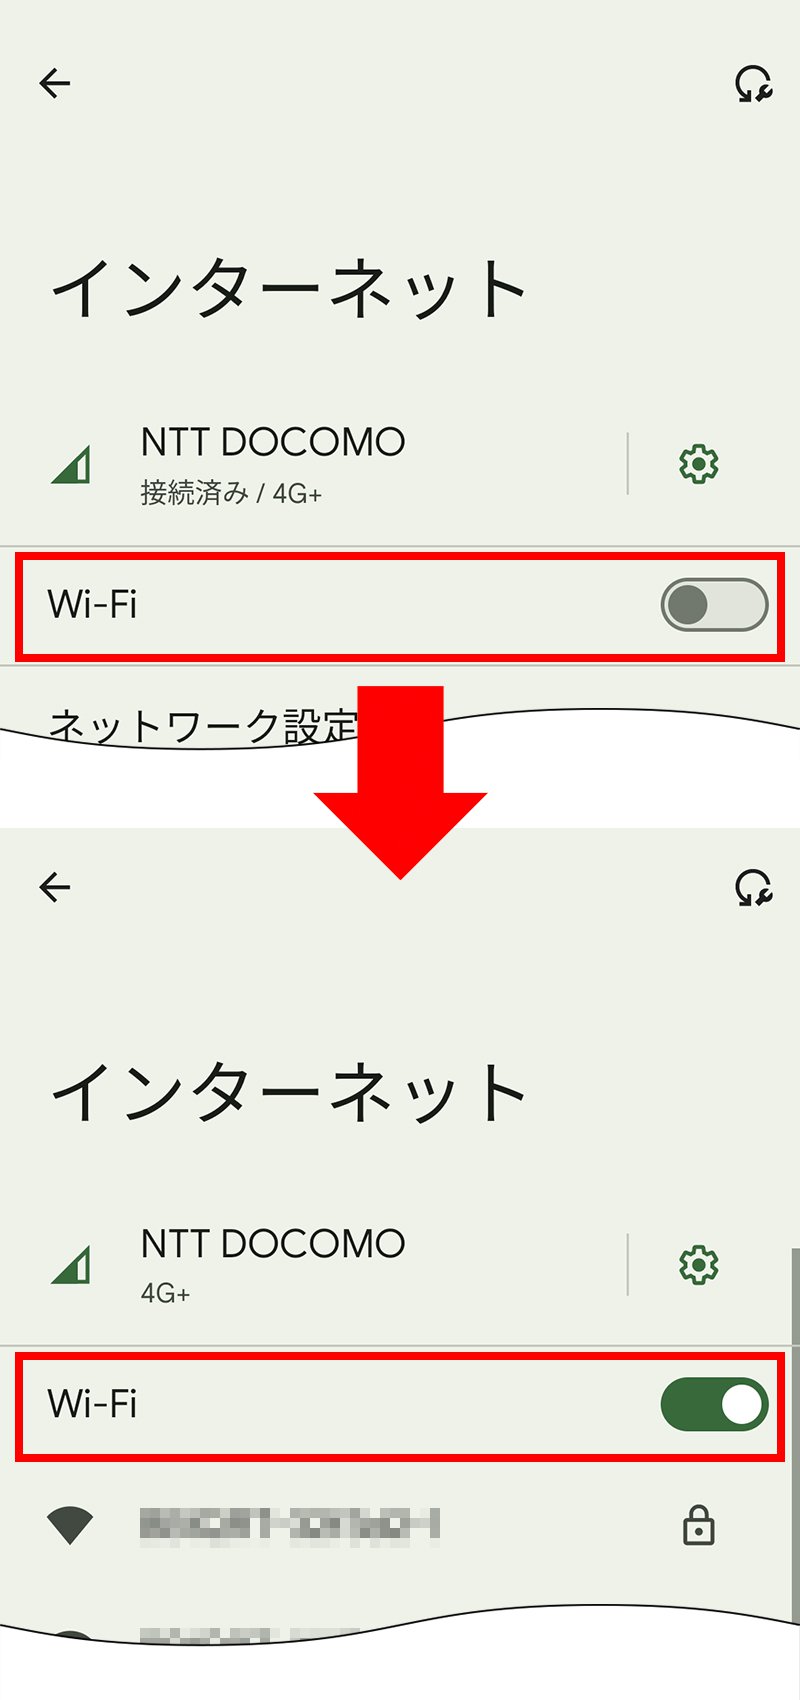 説明図：「Wi-Fiネットワーク」表示例